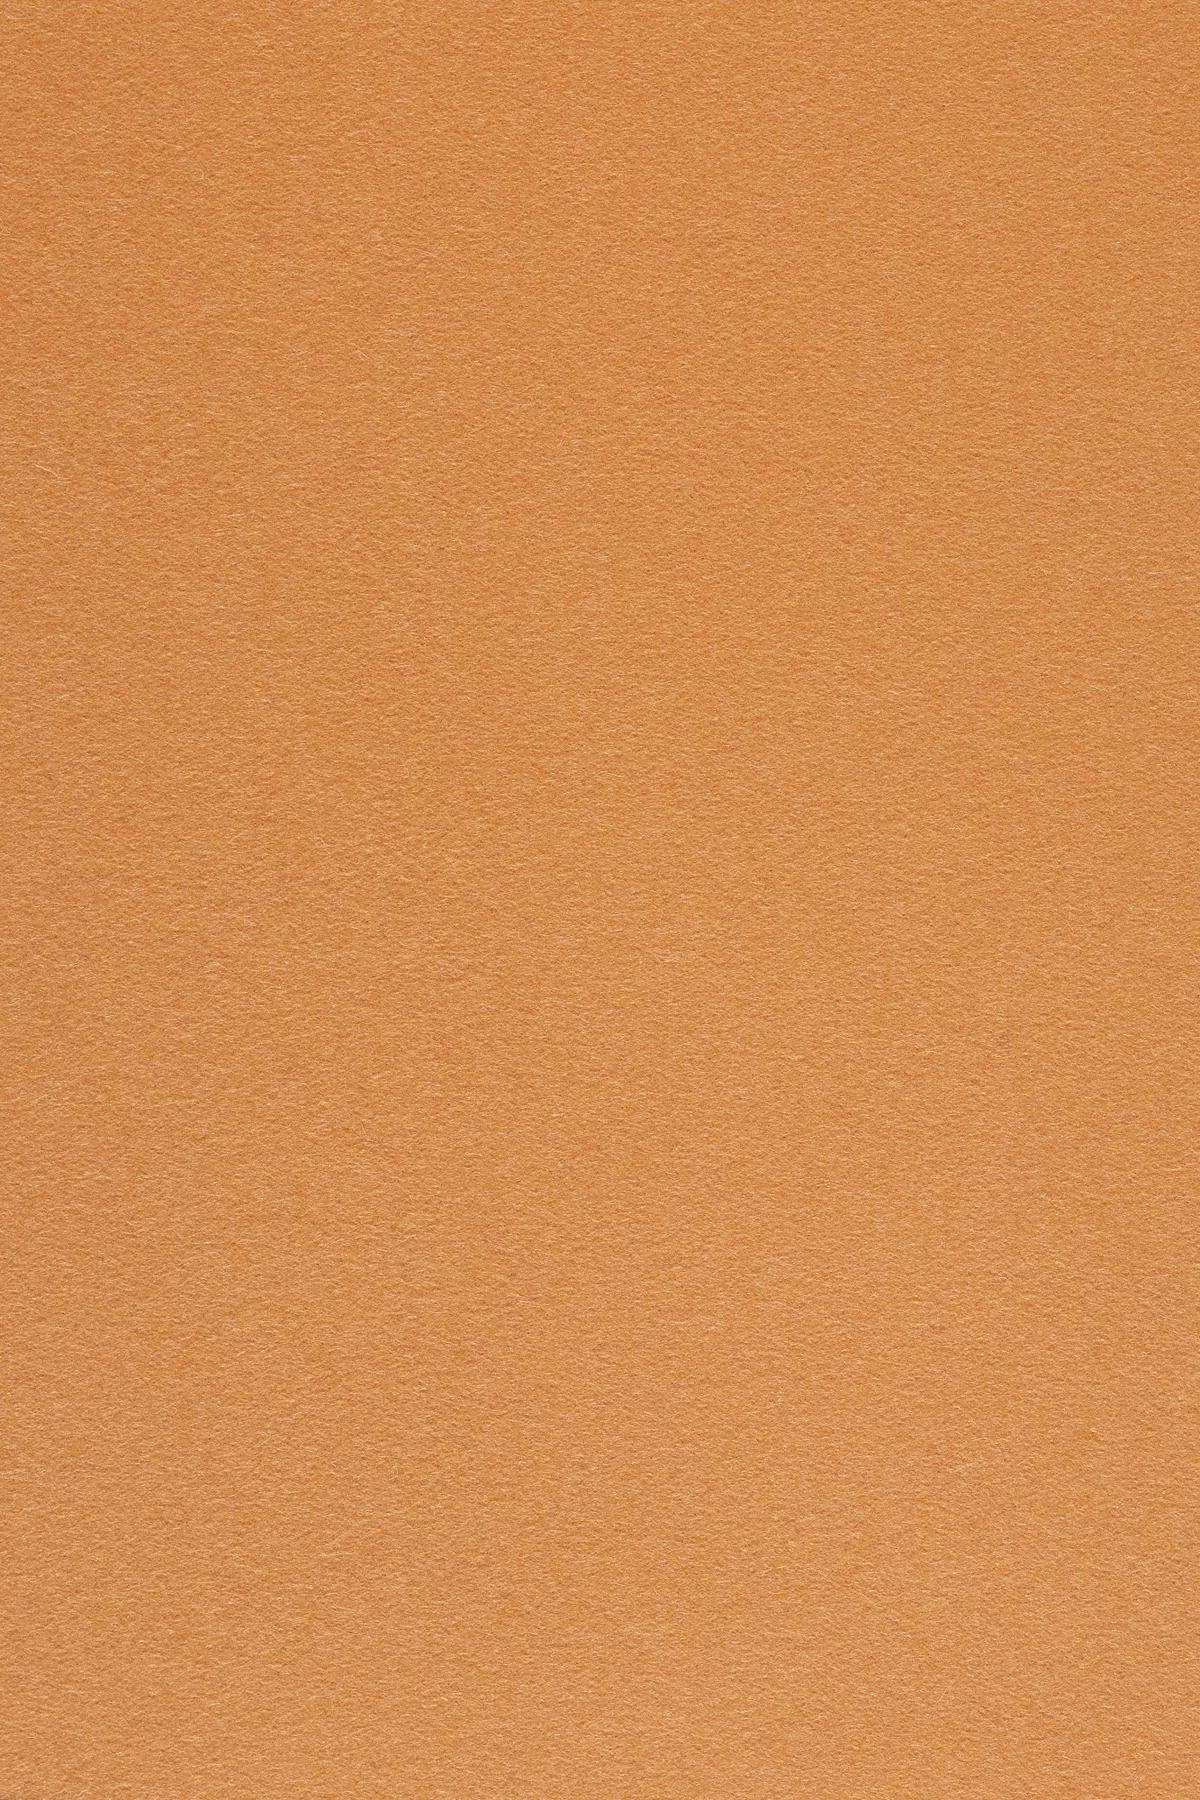 Fabric sample Divina 3 526 orange